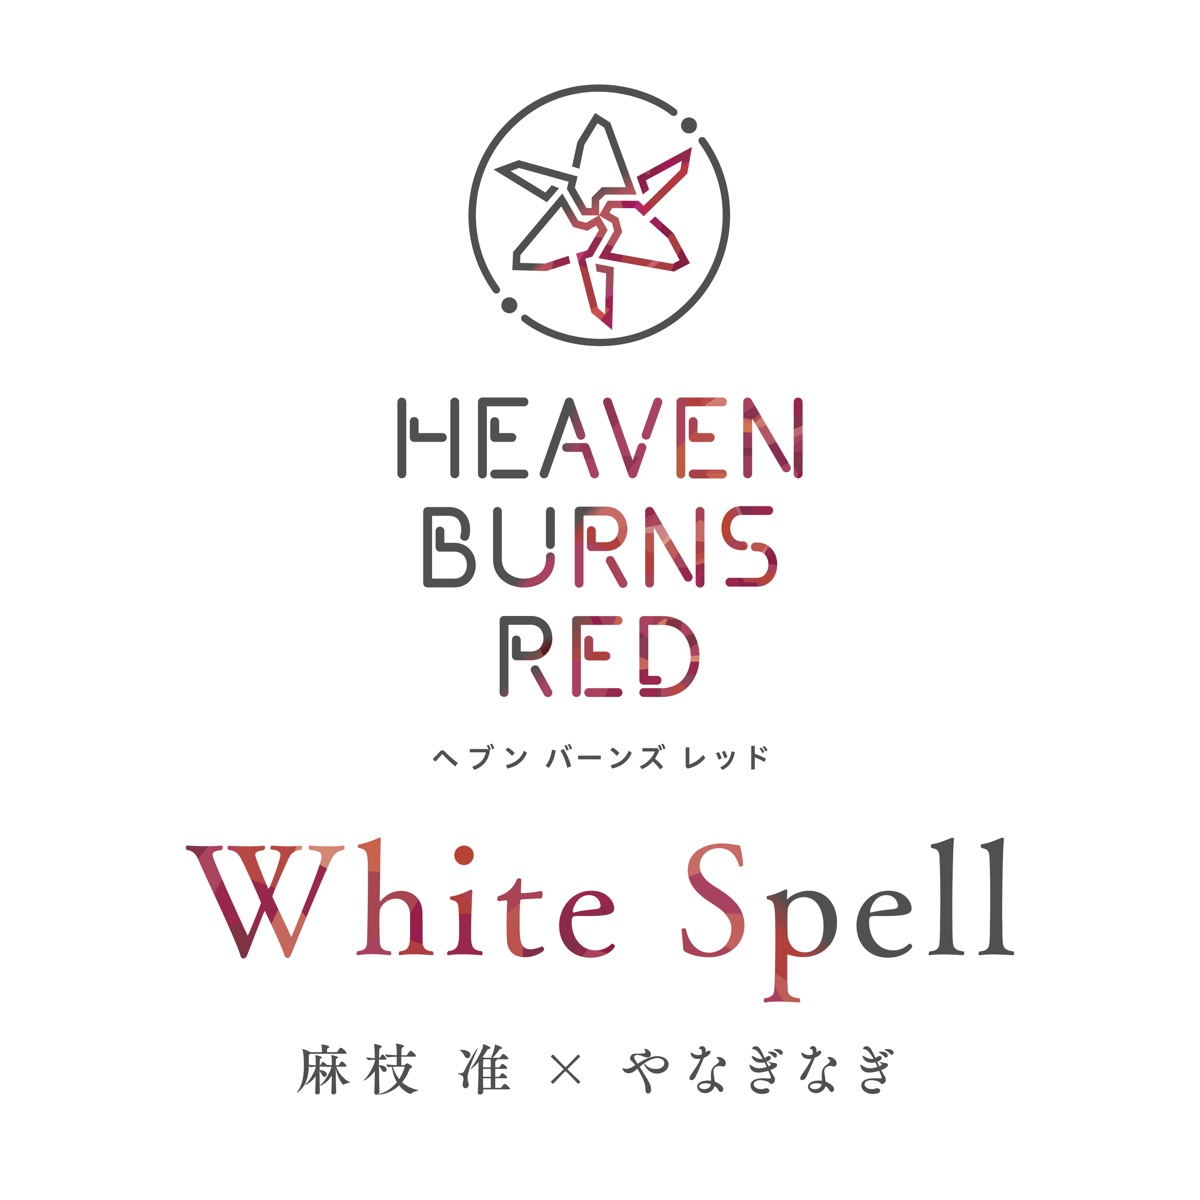 Cover art for『Jun Maeda x yanaginagi - White Spell』from the release『White Spell